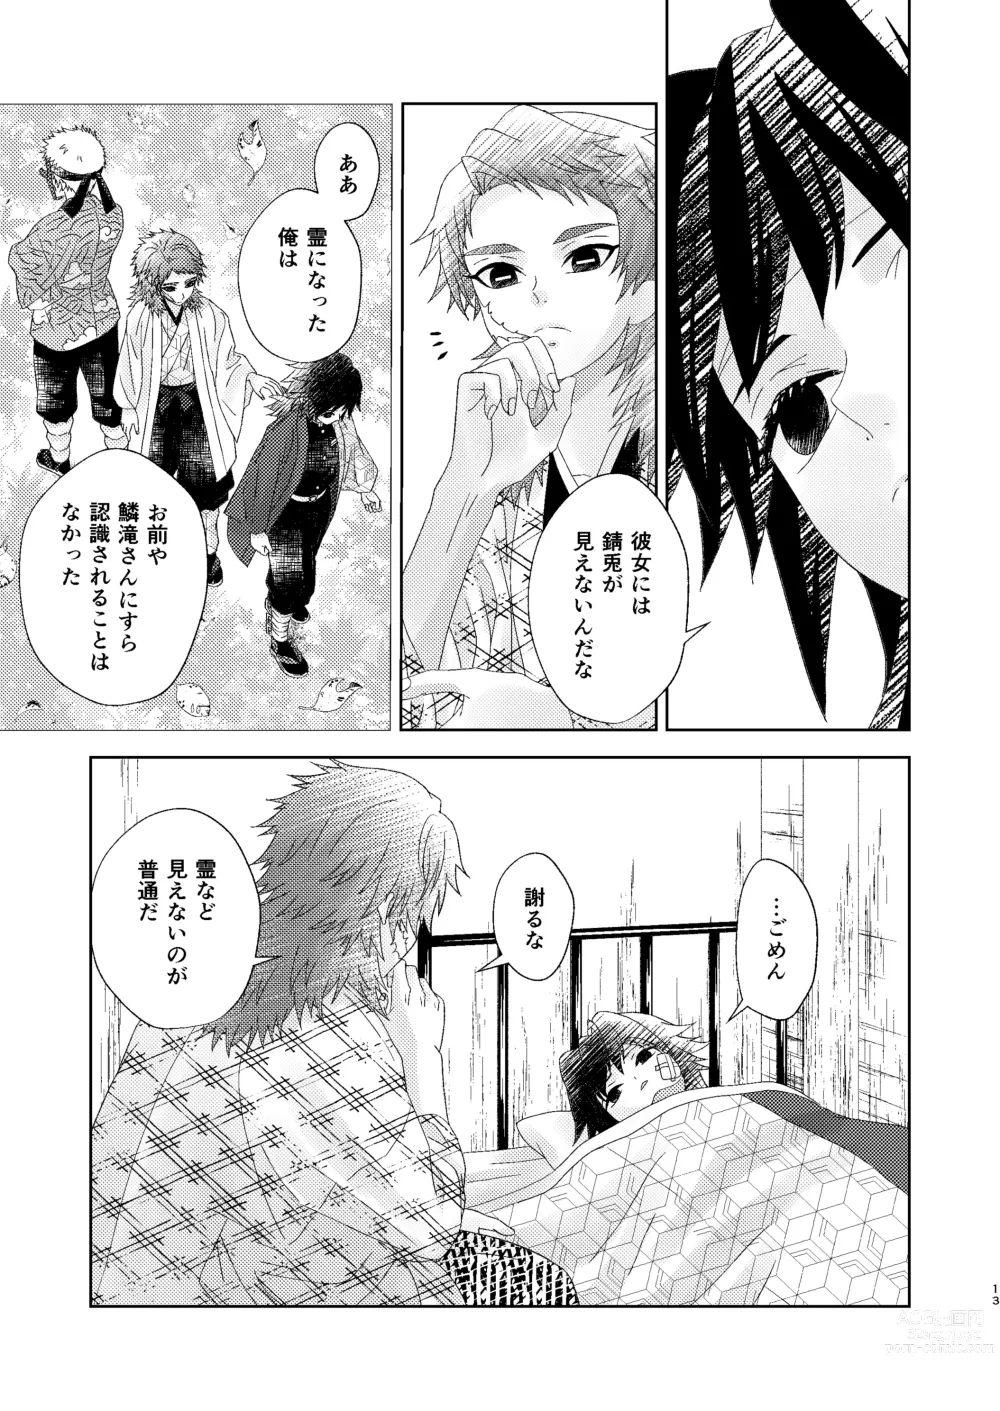 Page 12 of doujinshi Yuurei Kareshi no Koiwazurai